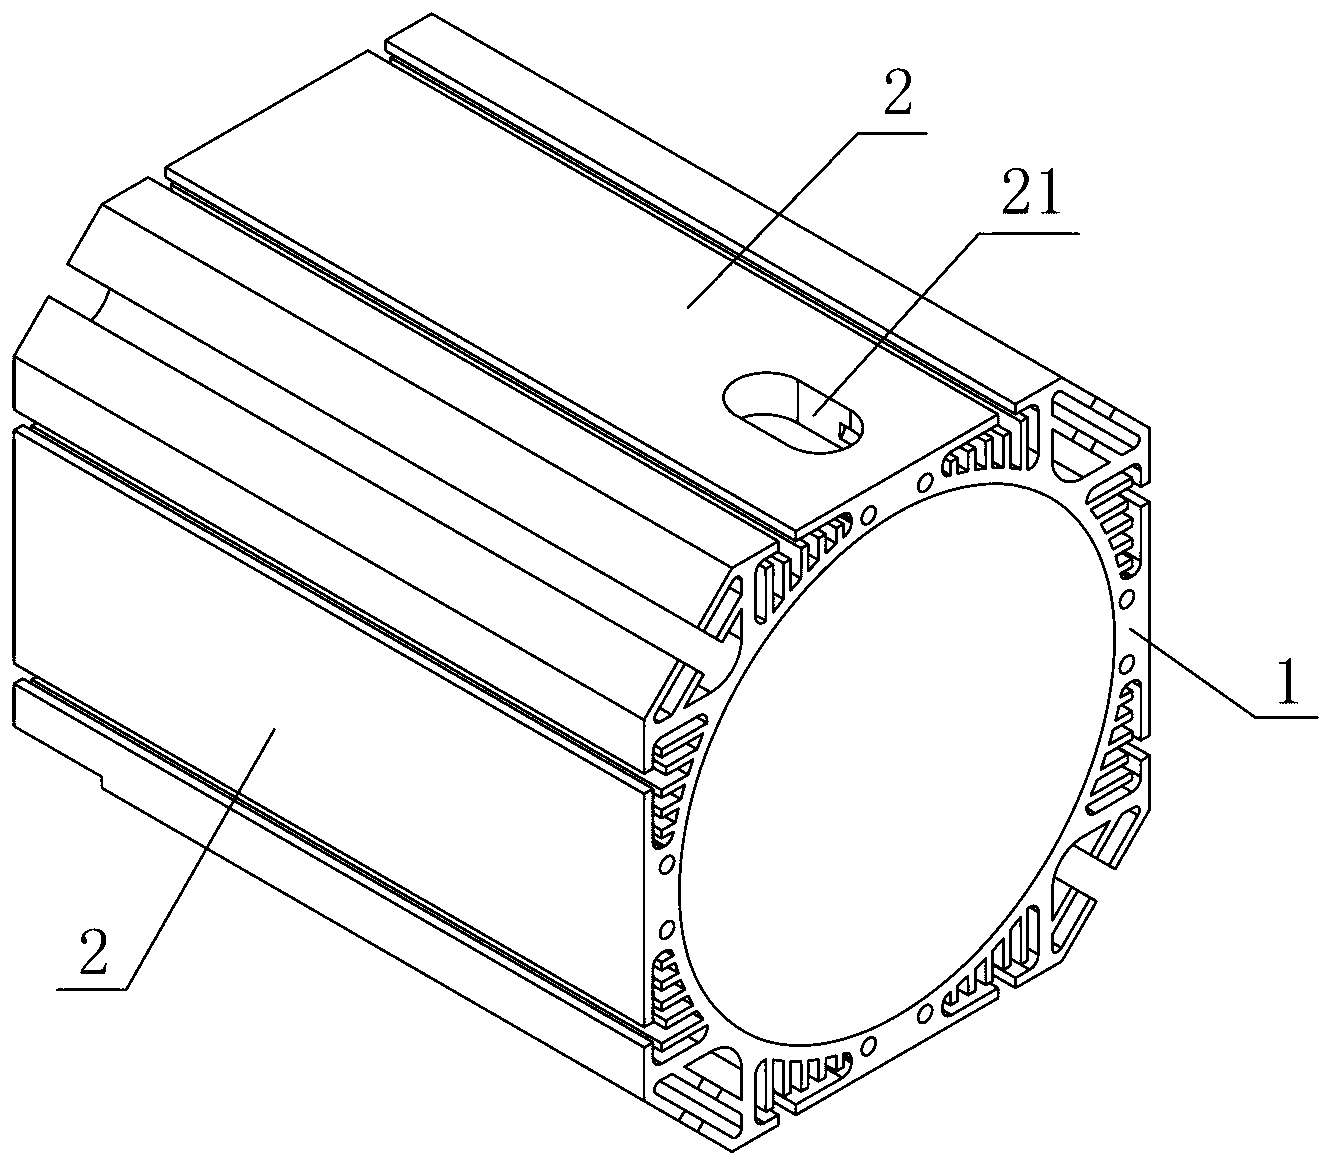 Motor shell of ventilated motor